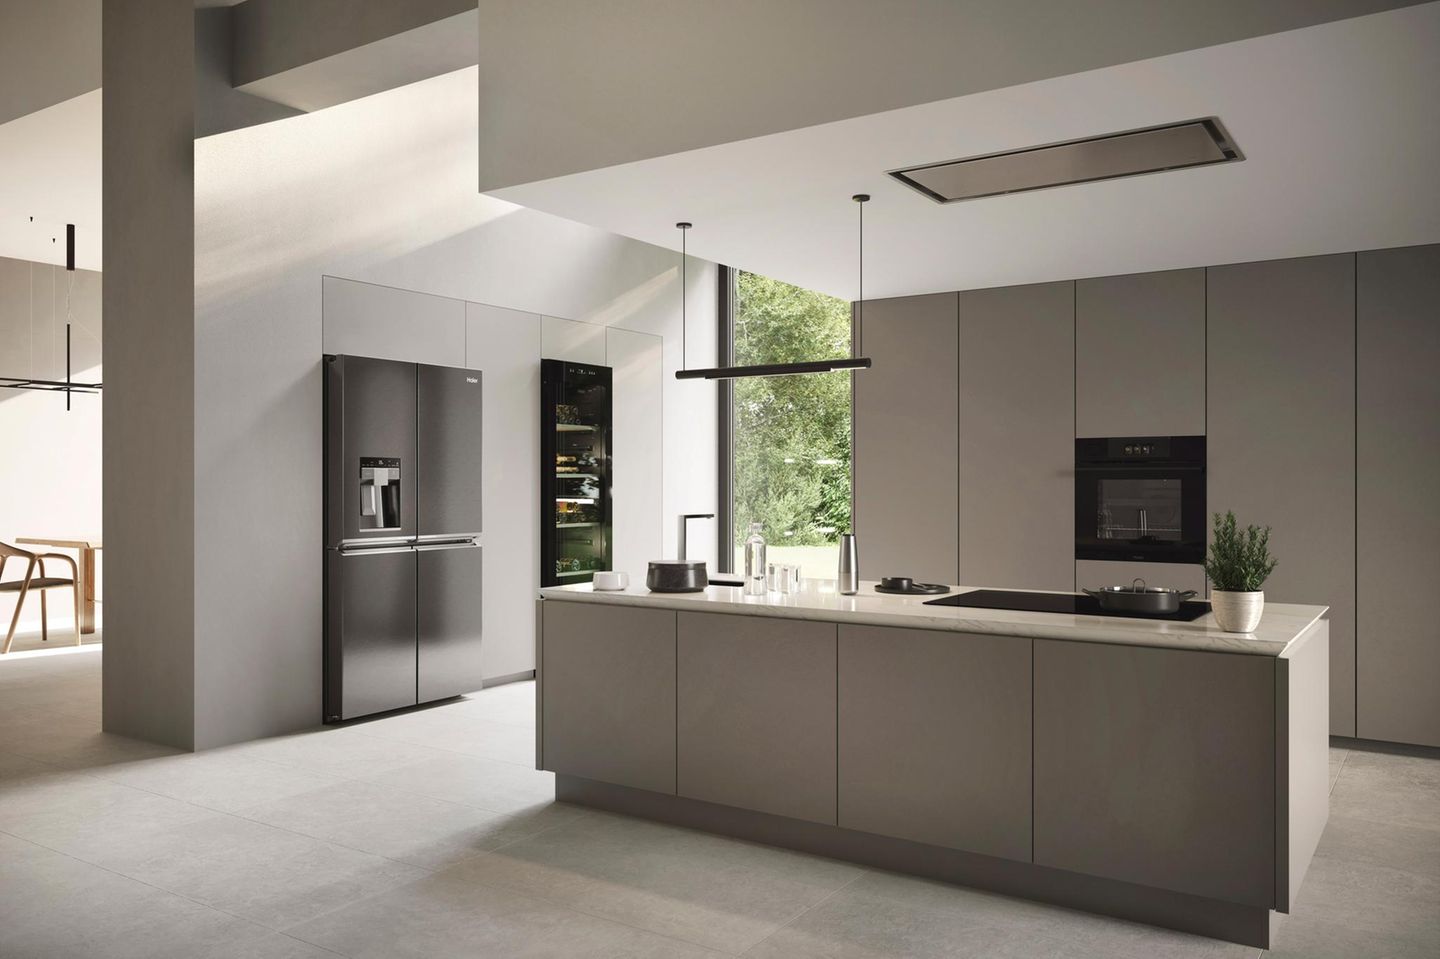 Kücheninsel in Grau in einer modernen Küche mit bodentiefen Fenstern